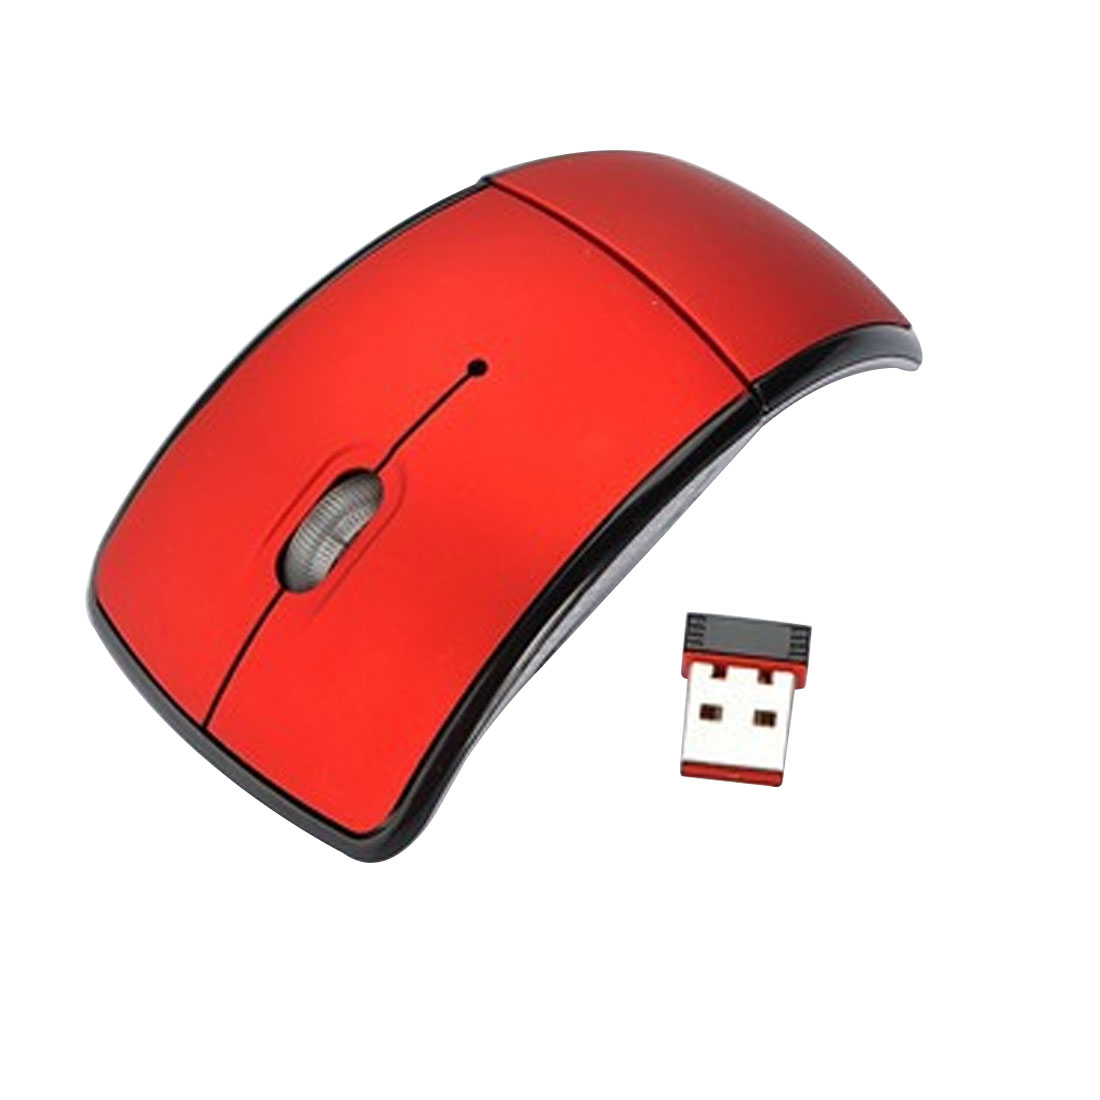 NOYOKERE Врвен Квалитет Свитлива Пати 2.4 Ghz Безжична Лак Оптички Глушец Глувци USB Приемник за персонален КОМПЈУТЕР